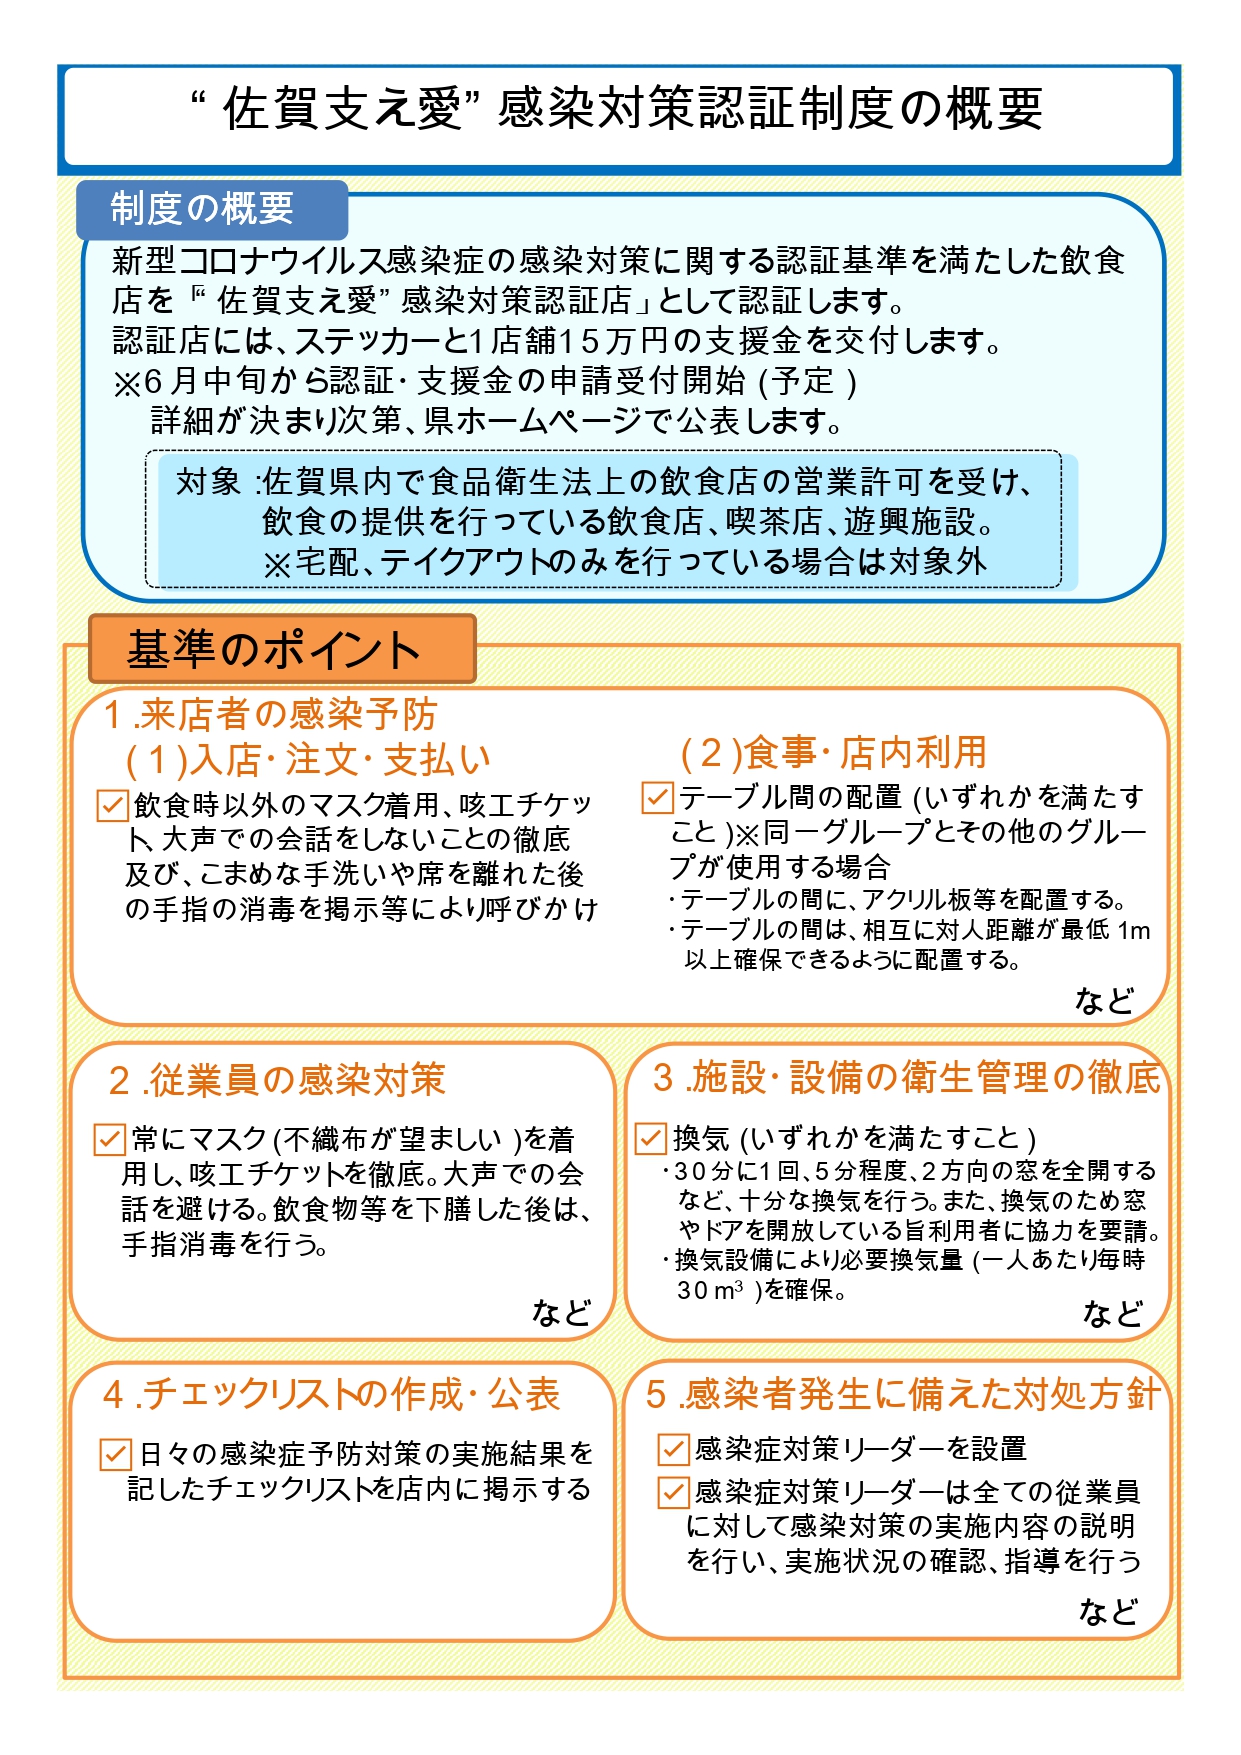 「“佐賀支え愛”感染対策認証制度」について(6月16日申請開始予定)